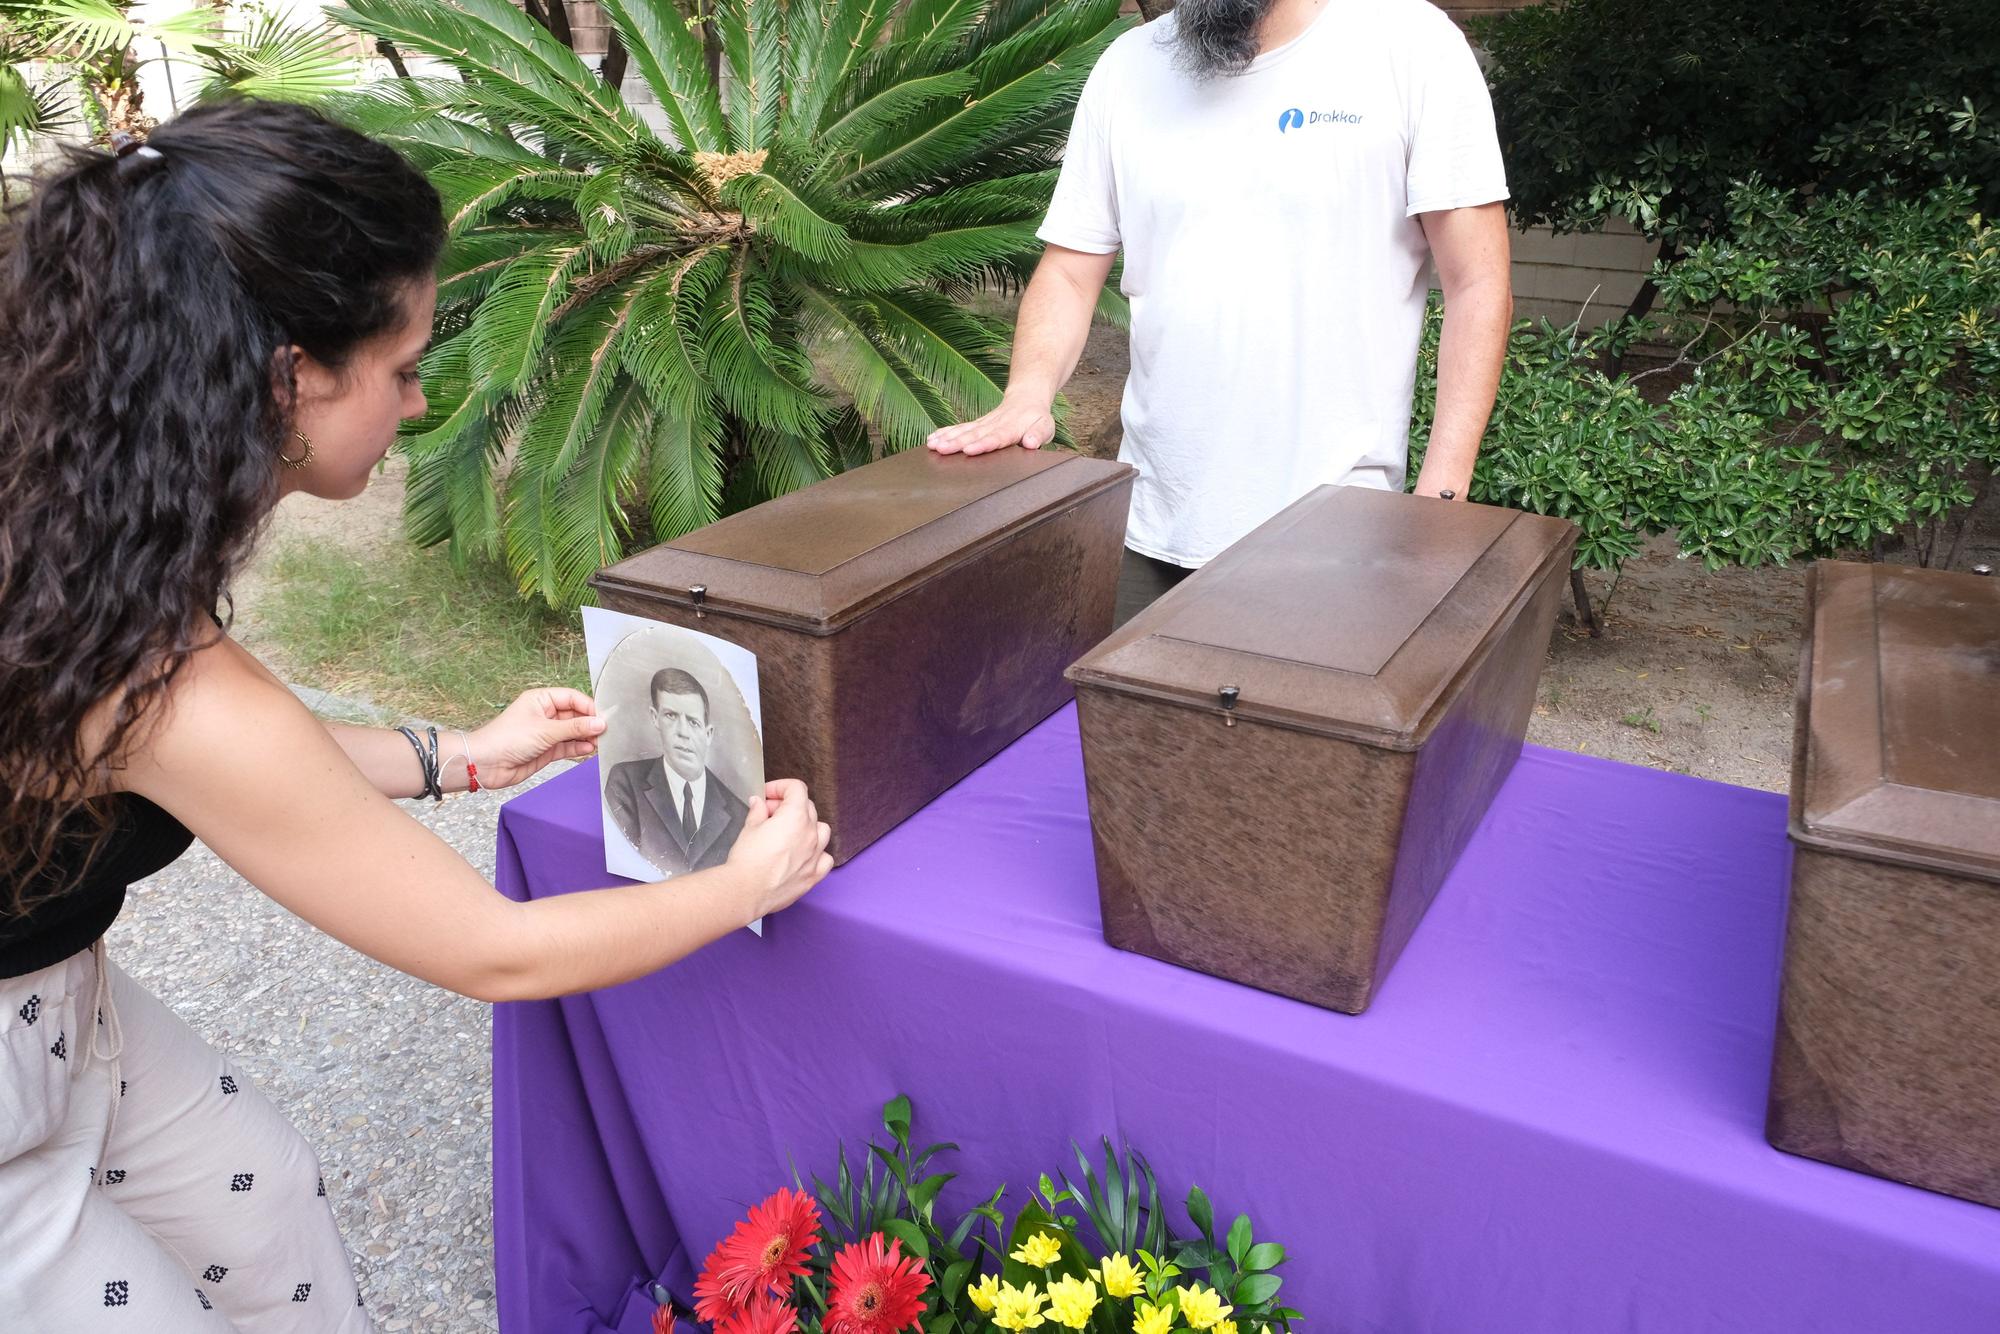 Así ha sido el emotivo acto de entrega de los restos exhumados de fusilados del franquismo a sus familiares en Aspe